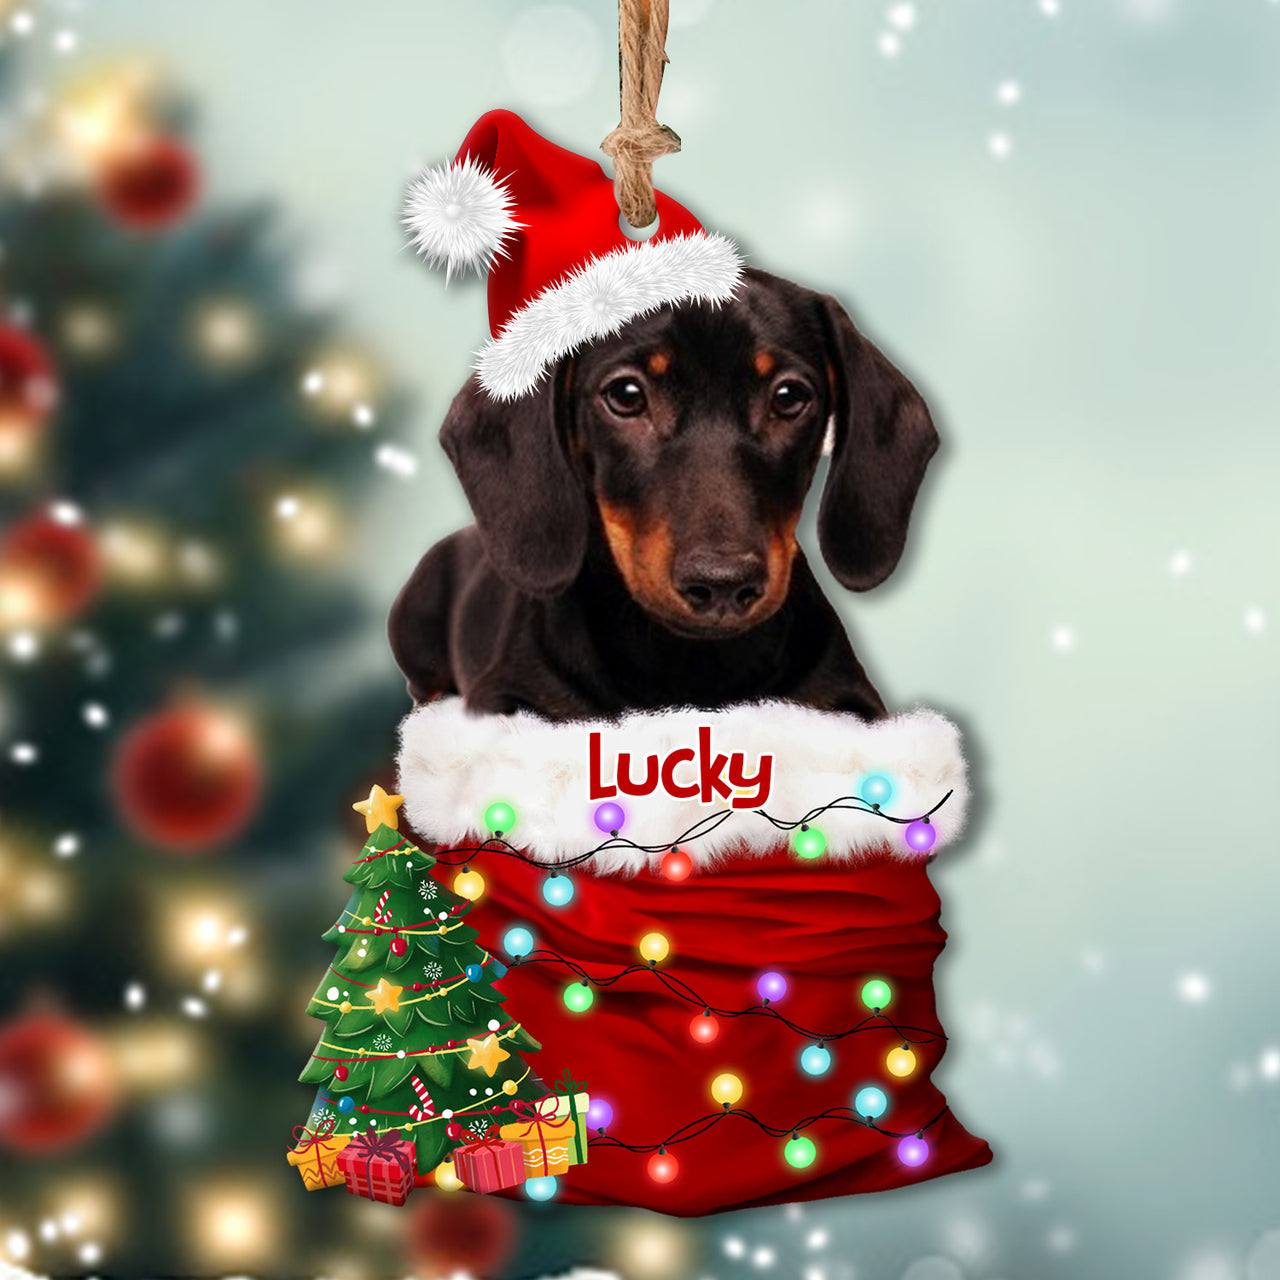 Personalized Upload Photo Dog Christmas Santa Acrylic Ornament, Customized Holiday Ornament AE